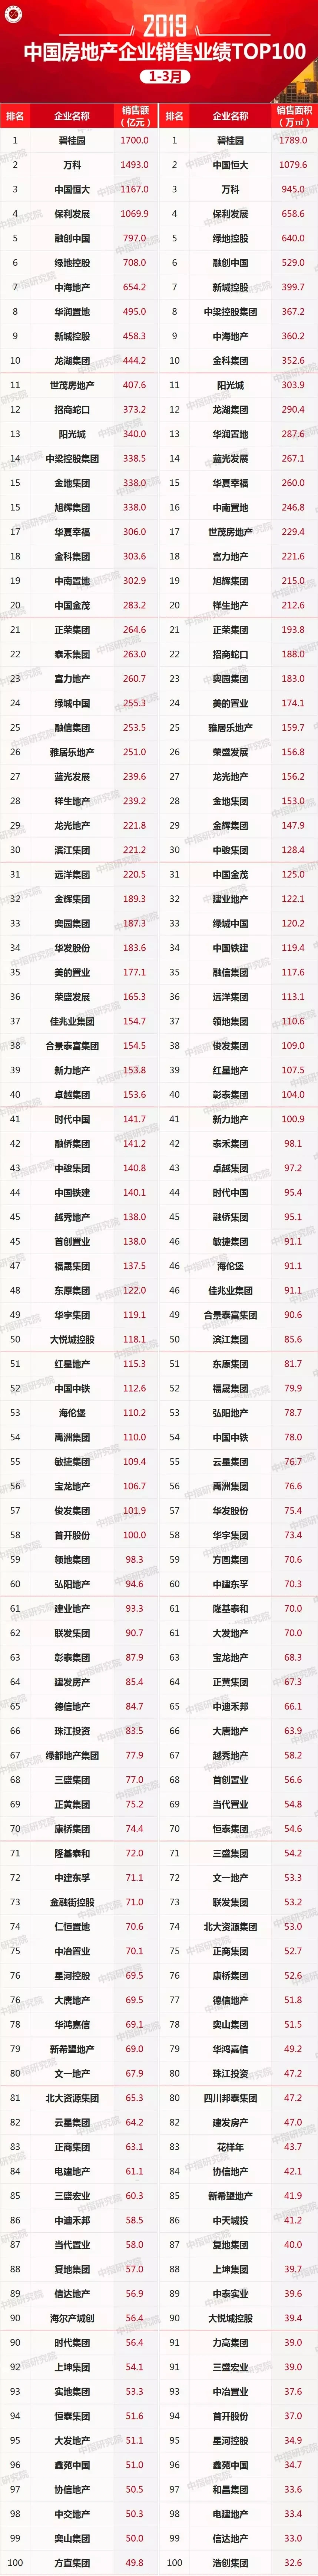 2019年1-3月中国房地产企业销售业绩100